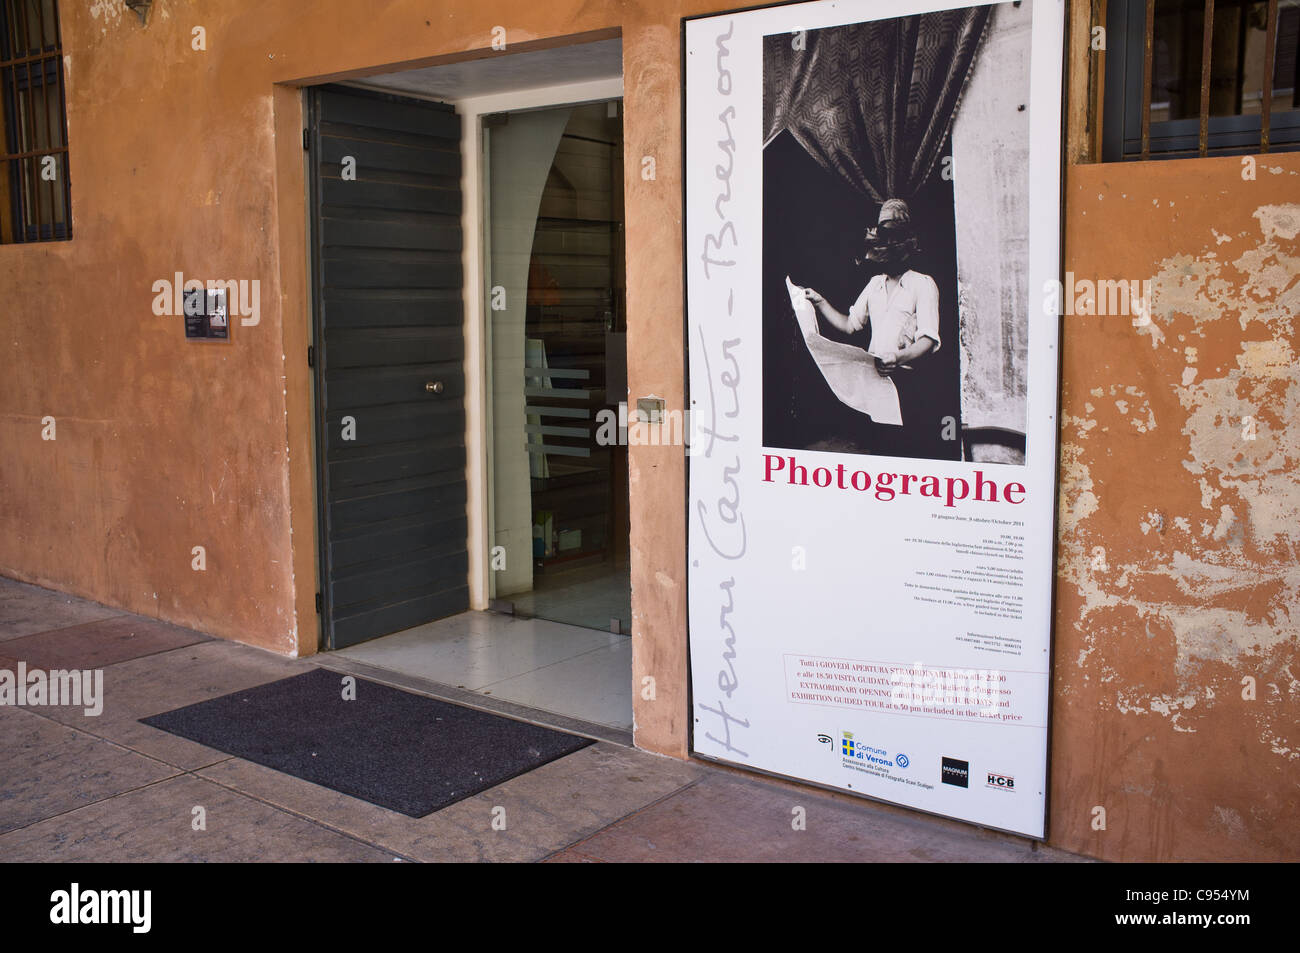 Entrada al museo Scavi Scaligeri y Henri Cartier Breson mostrar fotografía. Foto de stock